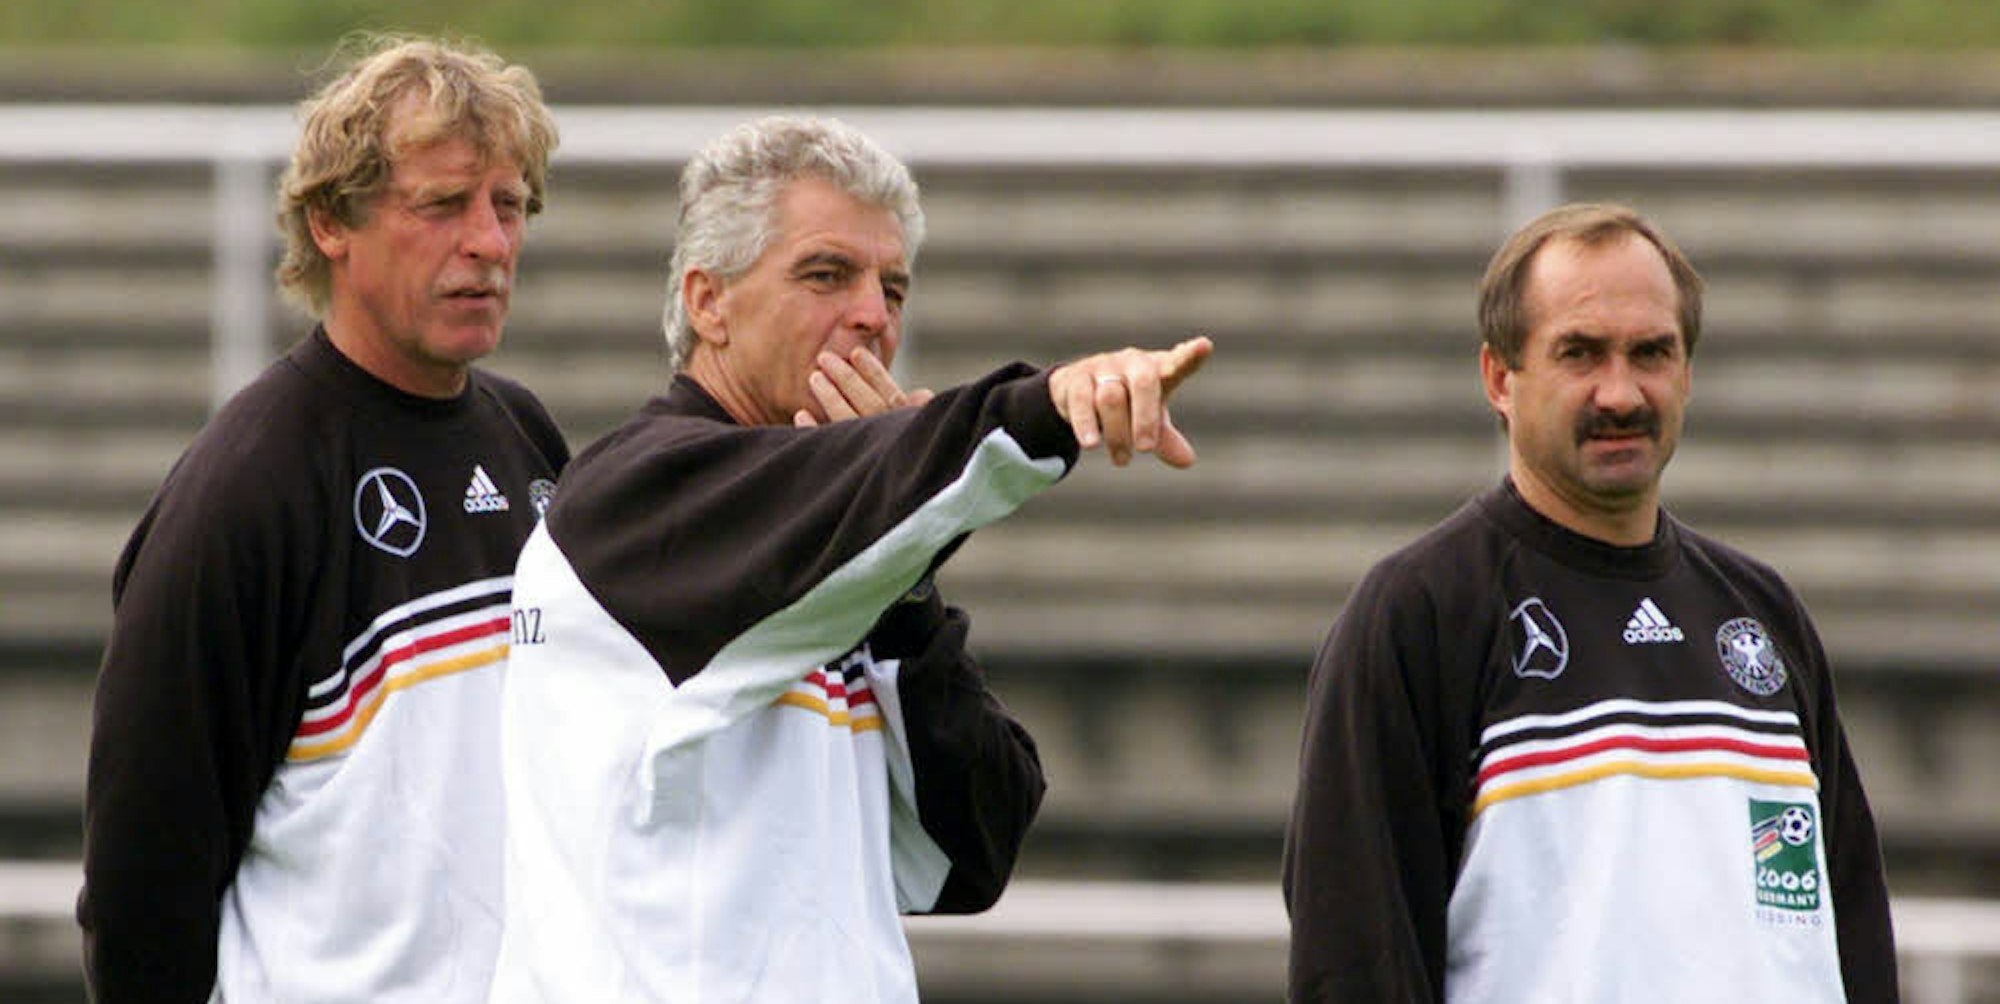 Der Pulheimer Erich Ribbeck, der am Dienstag seinen 80. Geburtstag feierte, war 1999 DFB-Teamchef (Bildmitte). Ihm zur Seite standen damals Erich Rutemöller (l.) und Uli Stielike.